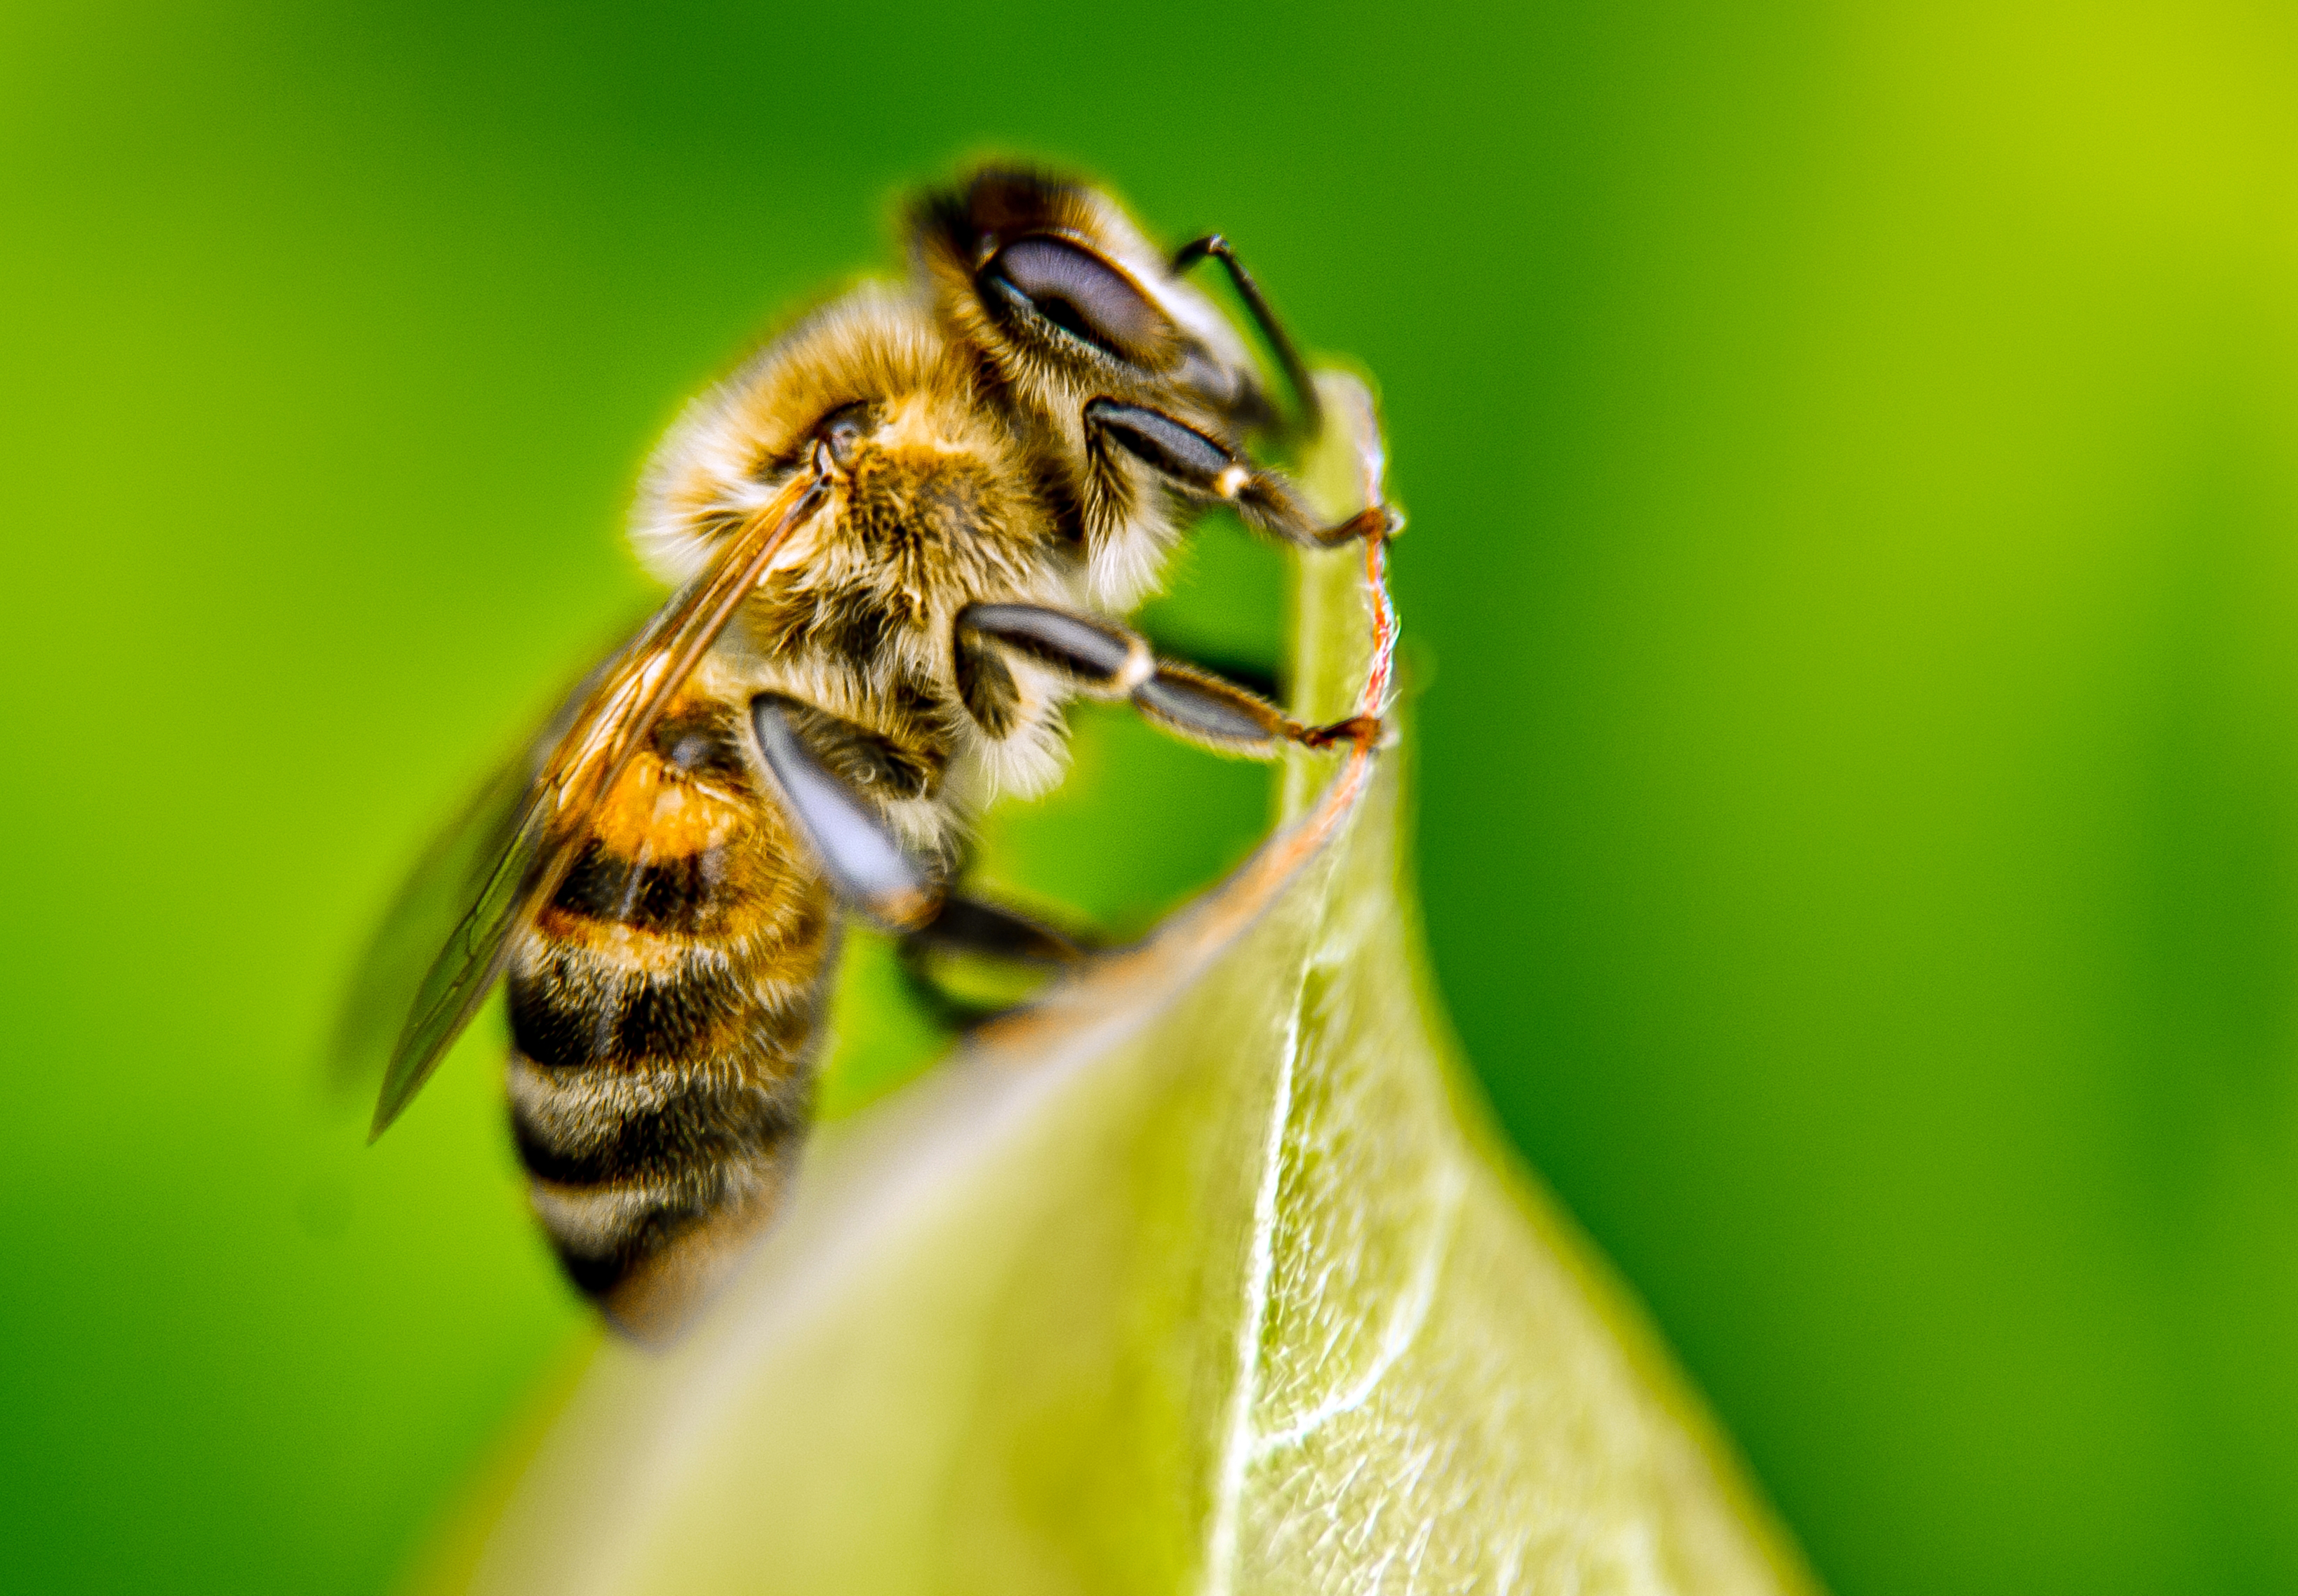 A tudomány szerint pusztítja a méheket, a magyar kormány szerint attól még lehet használni